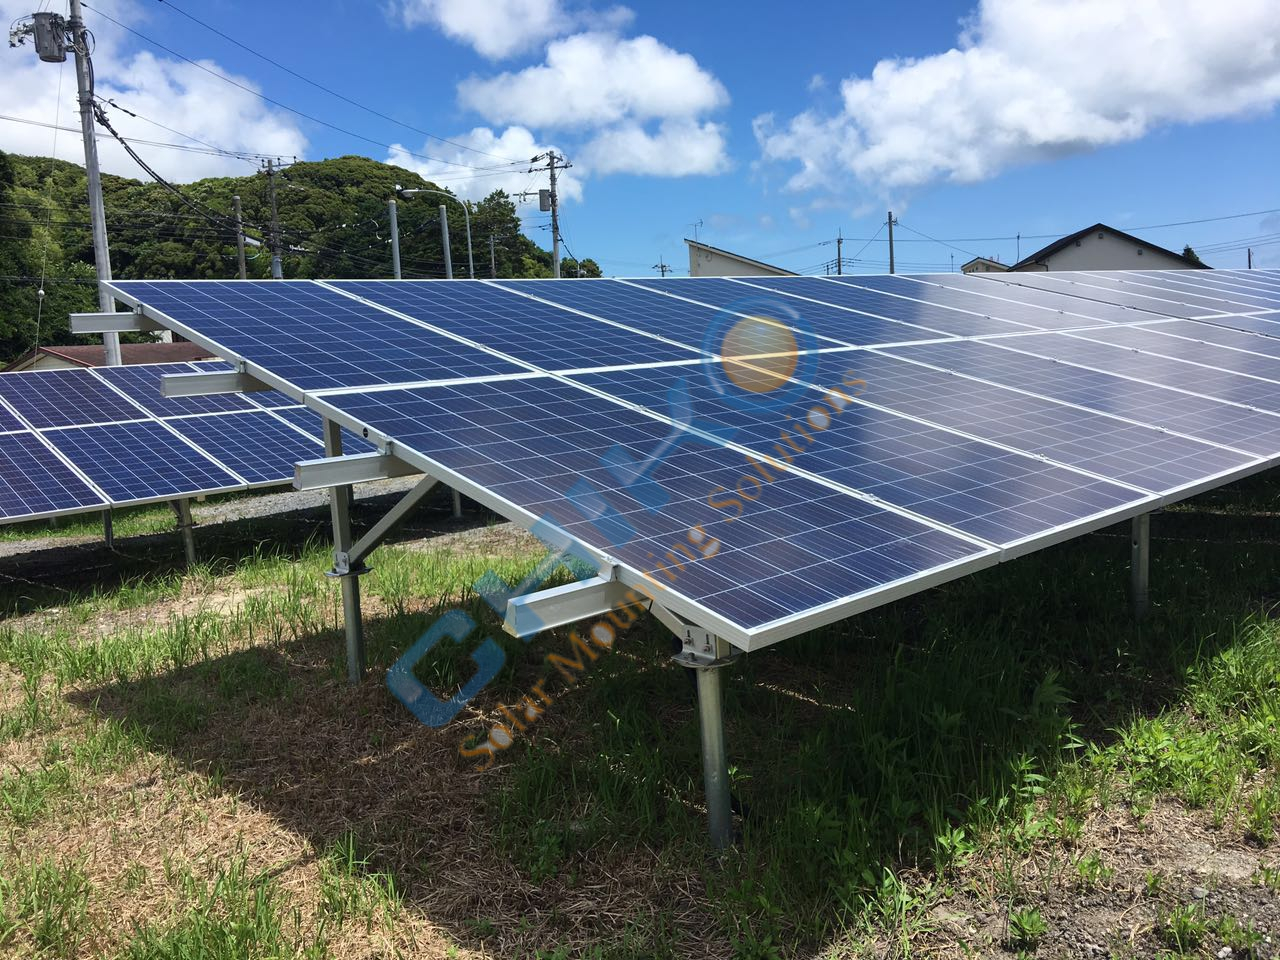 chiko solar farm丨solar ground mounting